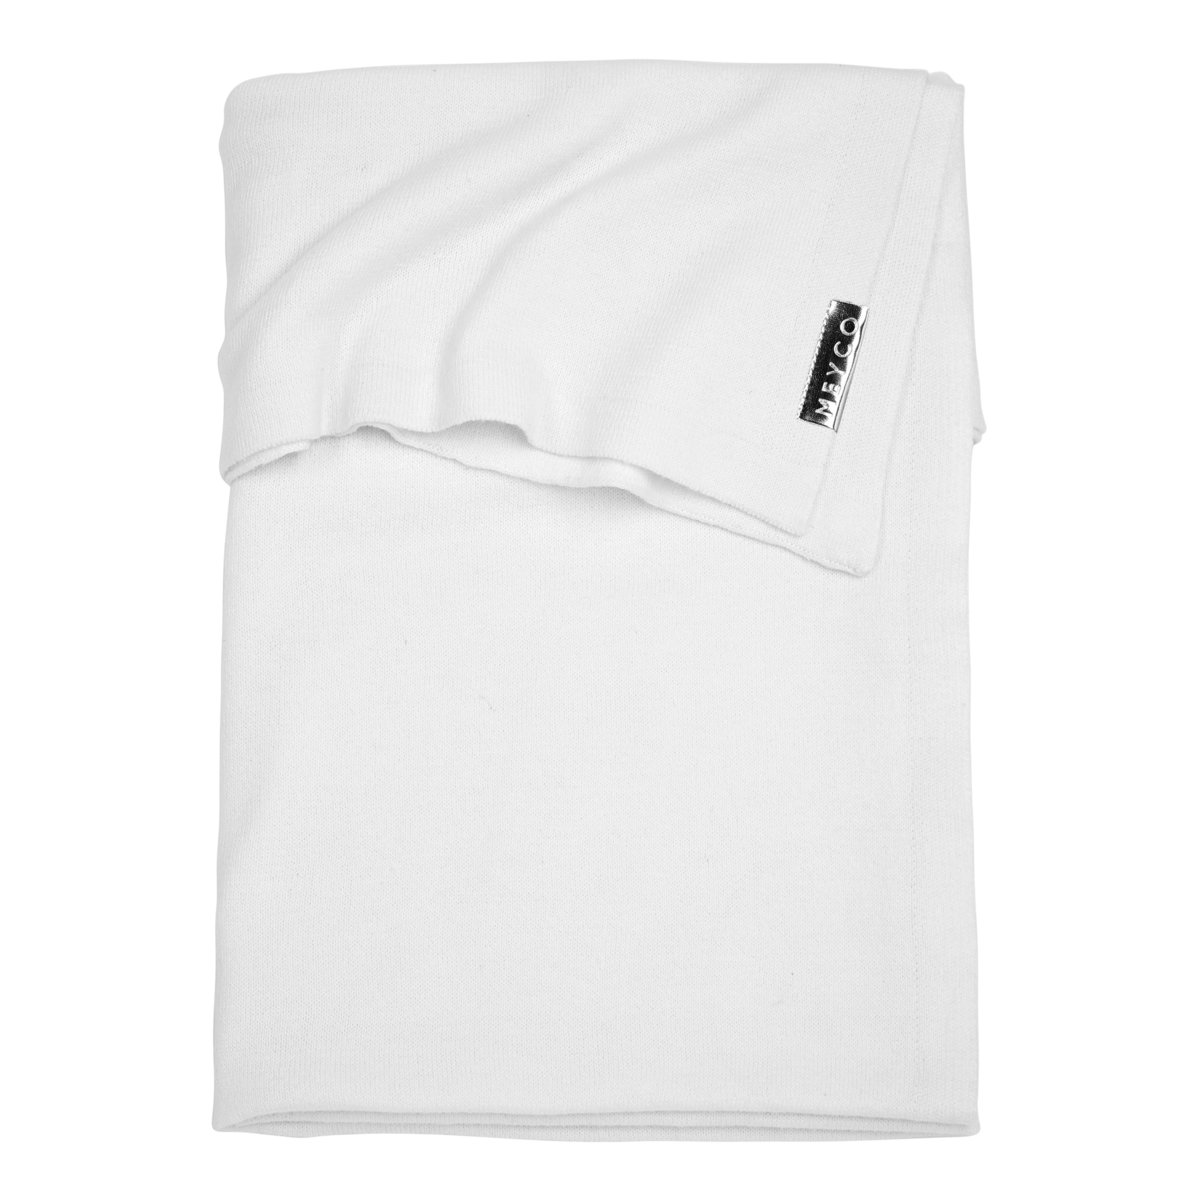 Meyco Crib Blanket Knit Basic - 75x100 cm. - 75x100